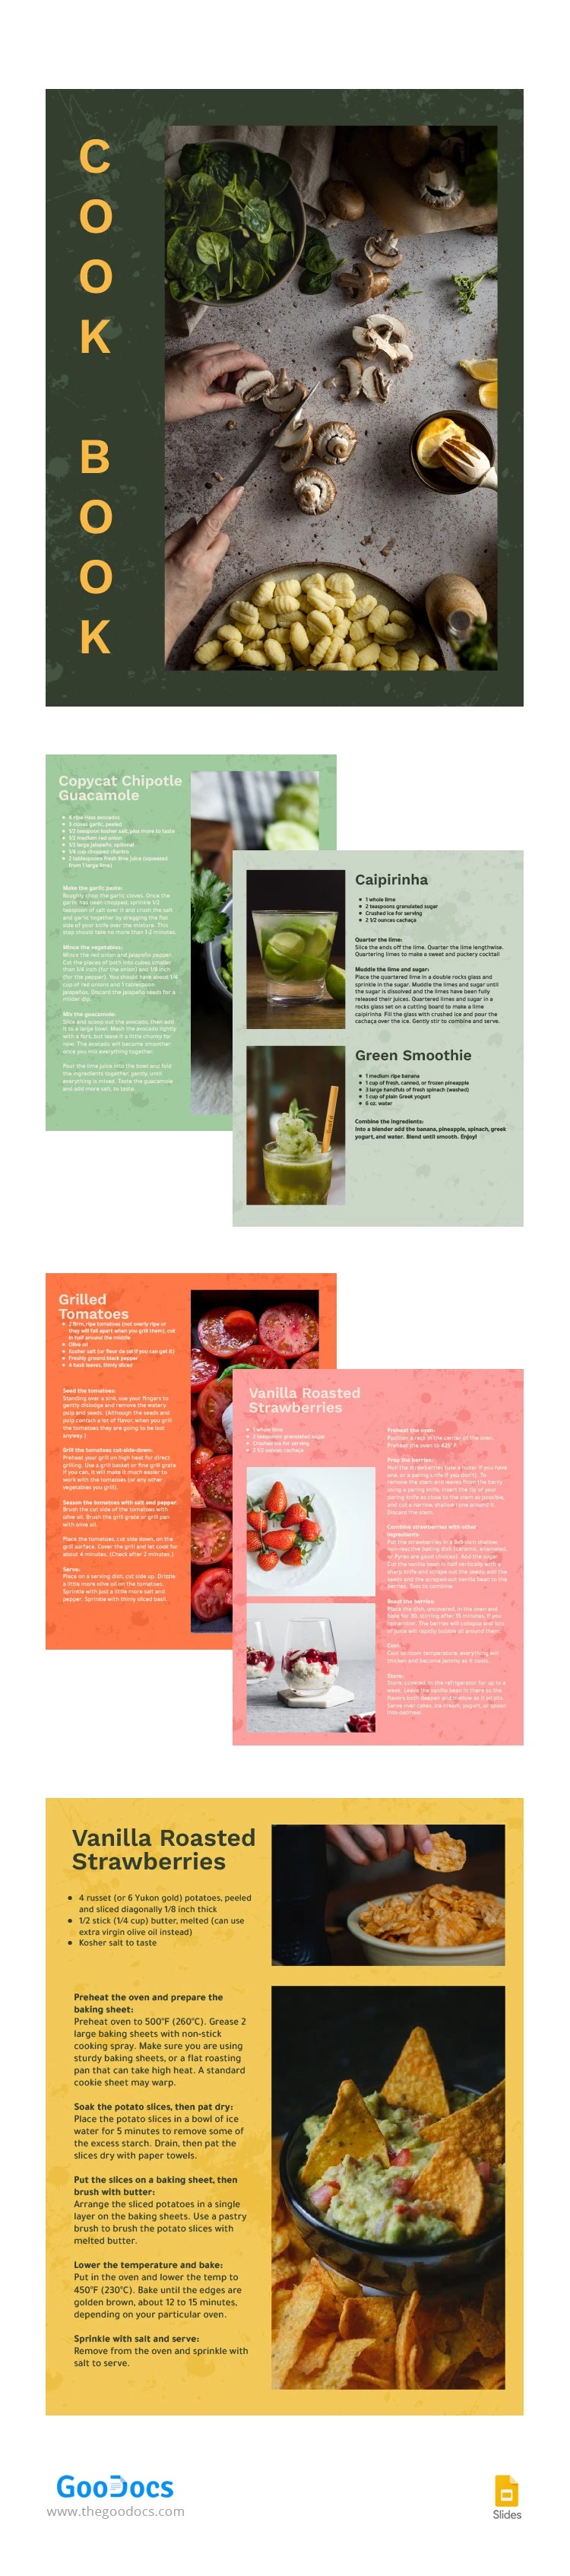 Libro di cucina colorato - free Google Docs Template - 10063265